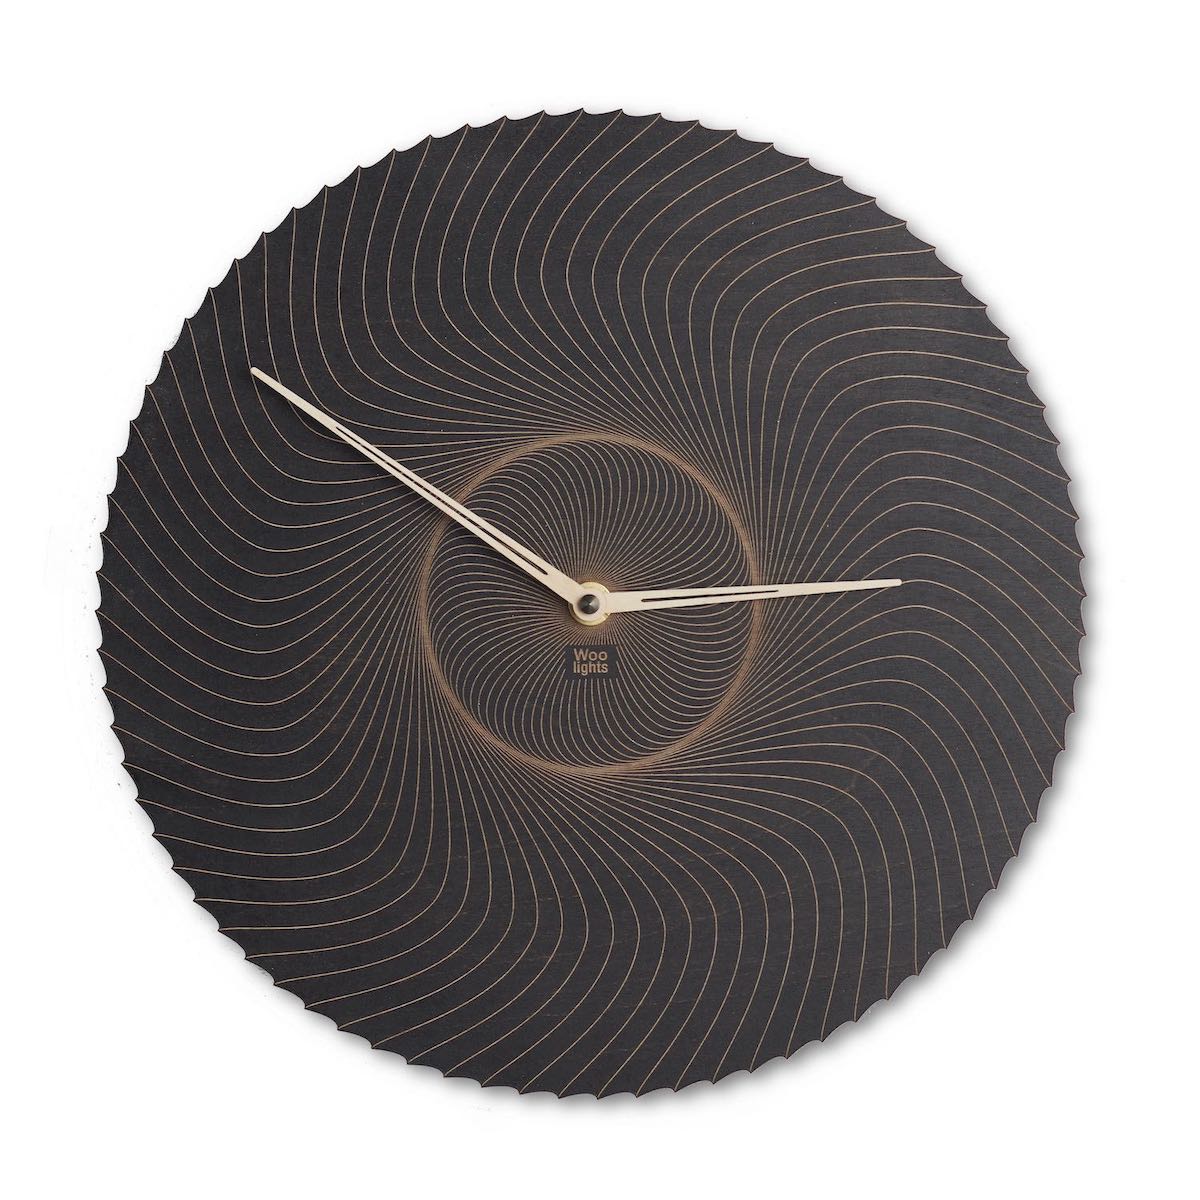 Abstrakcyjny zegar ścienny drewniany w kolorze czarnym